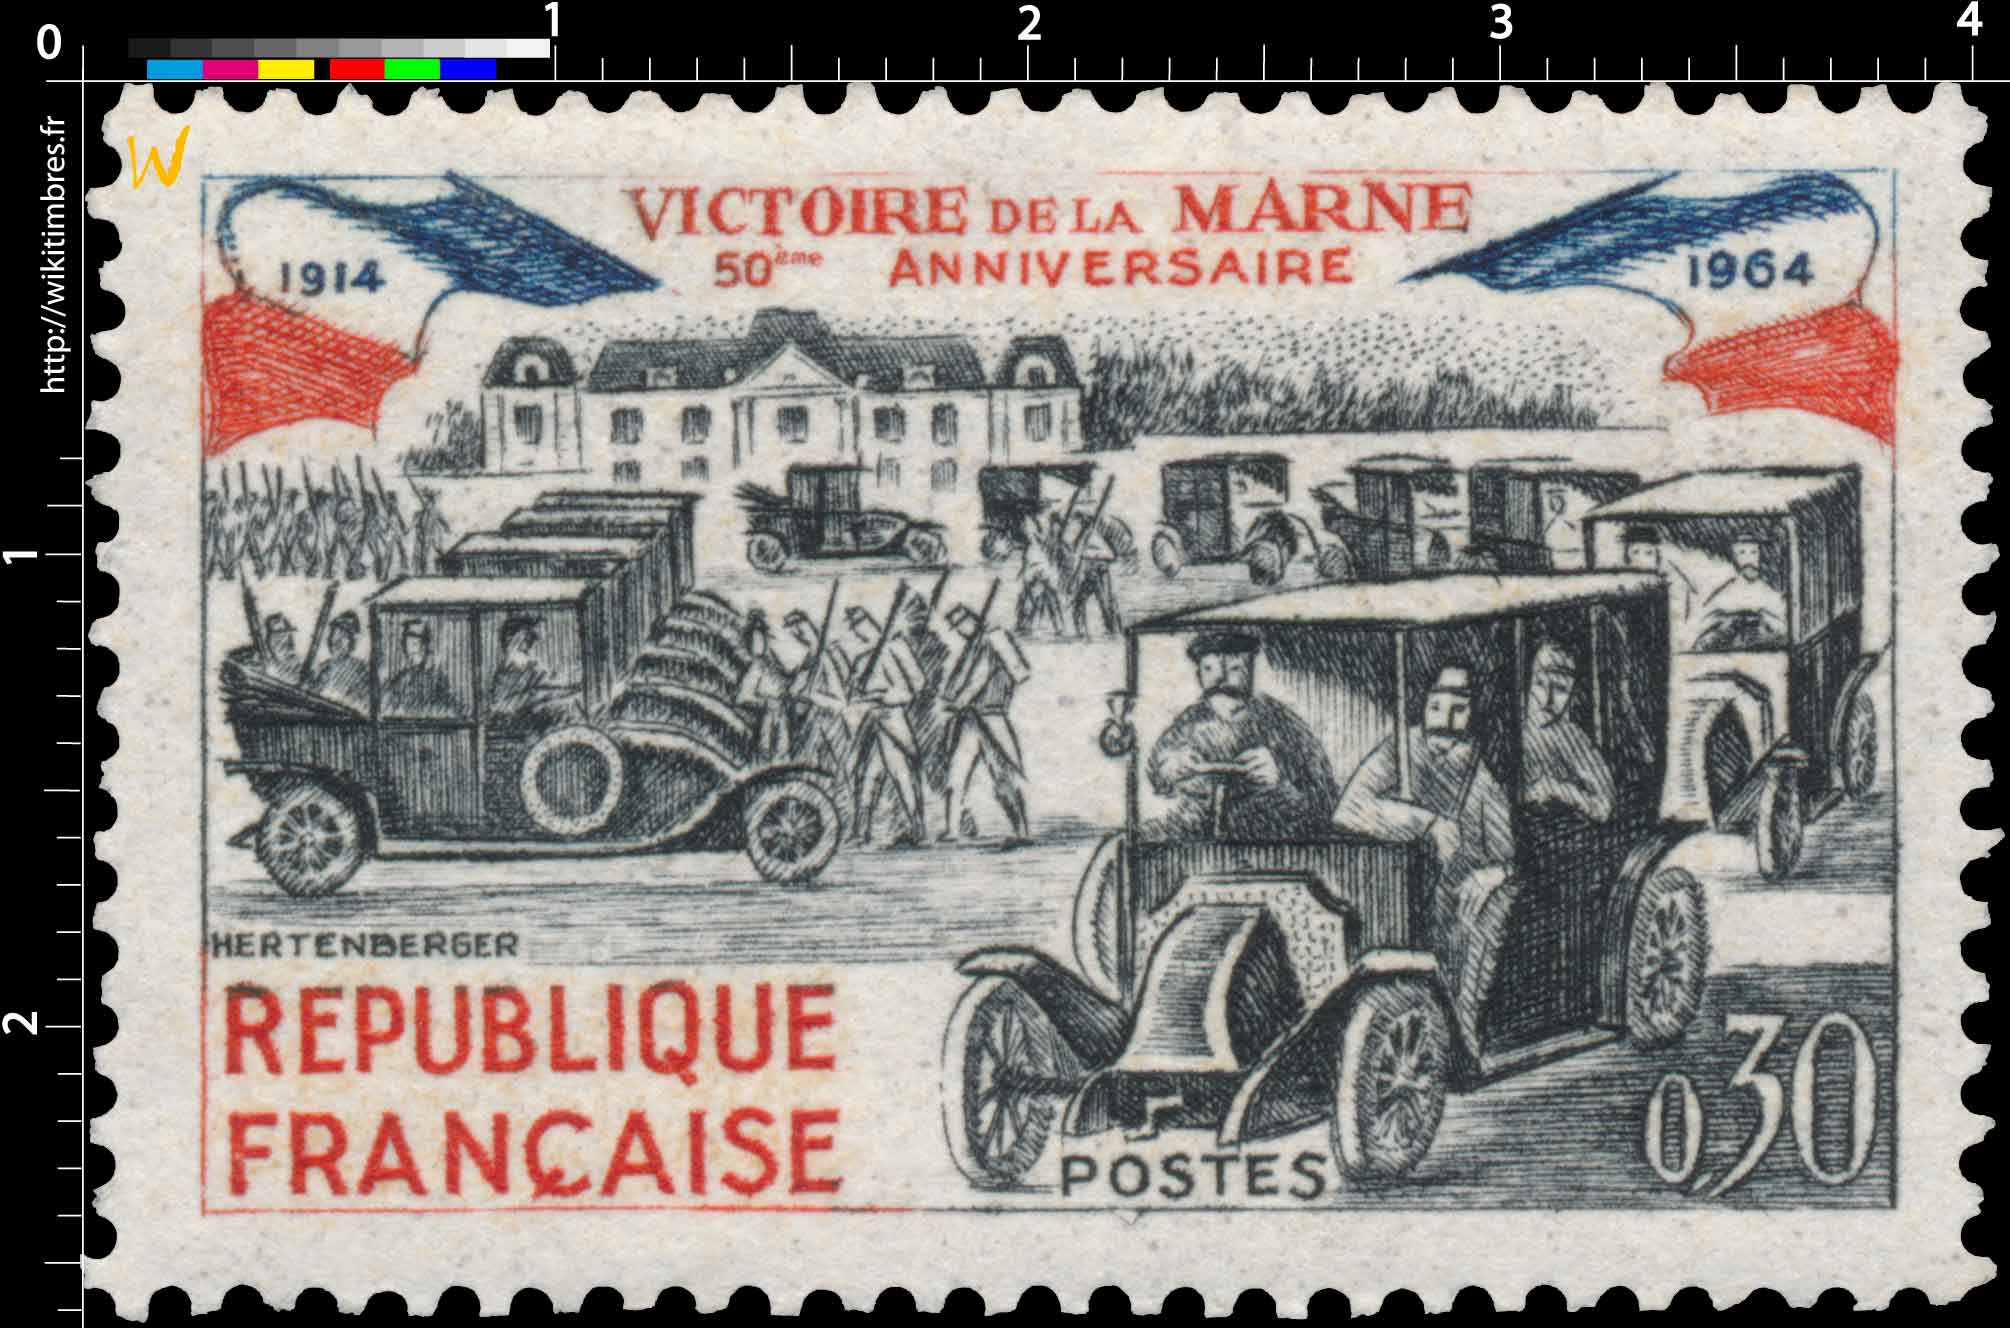 VICTOIRE DE LA MARNE 50ème ANNIVERSAIRE 1914-1964